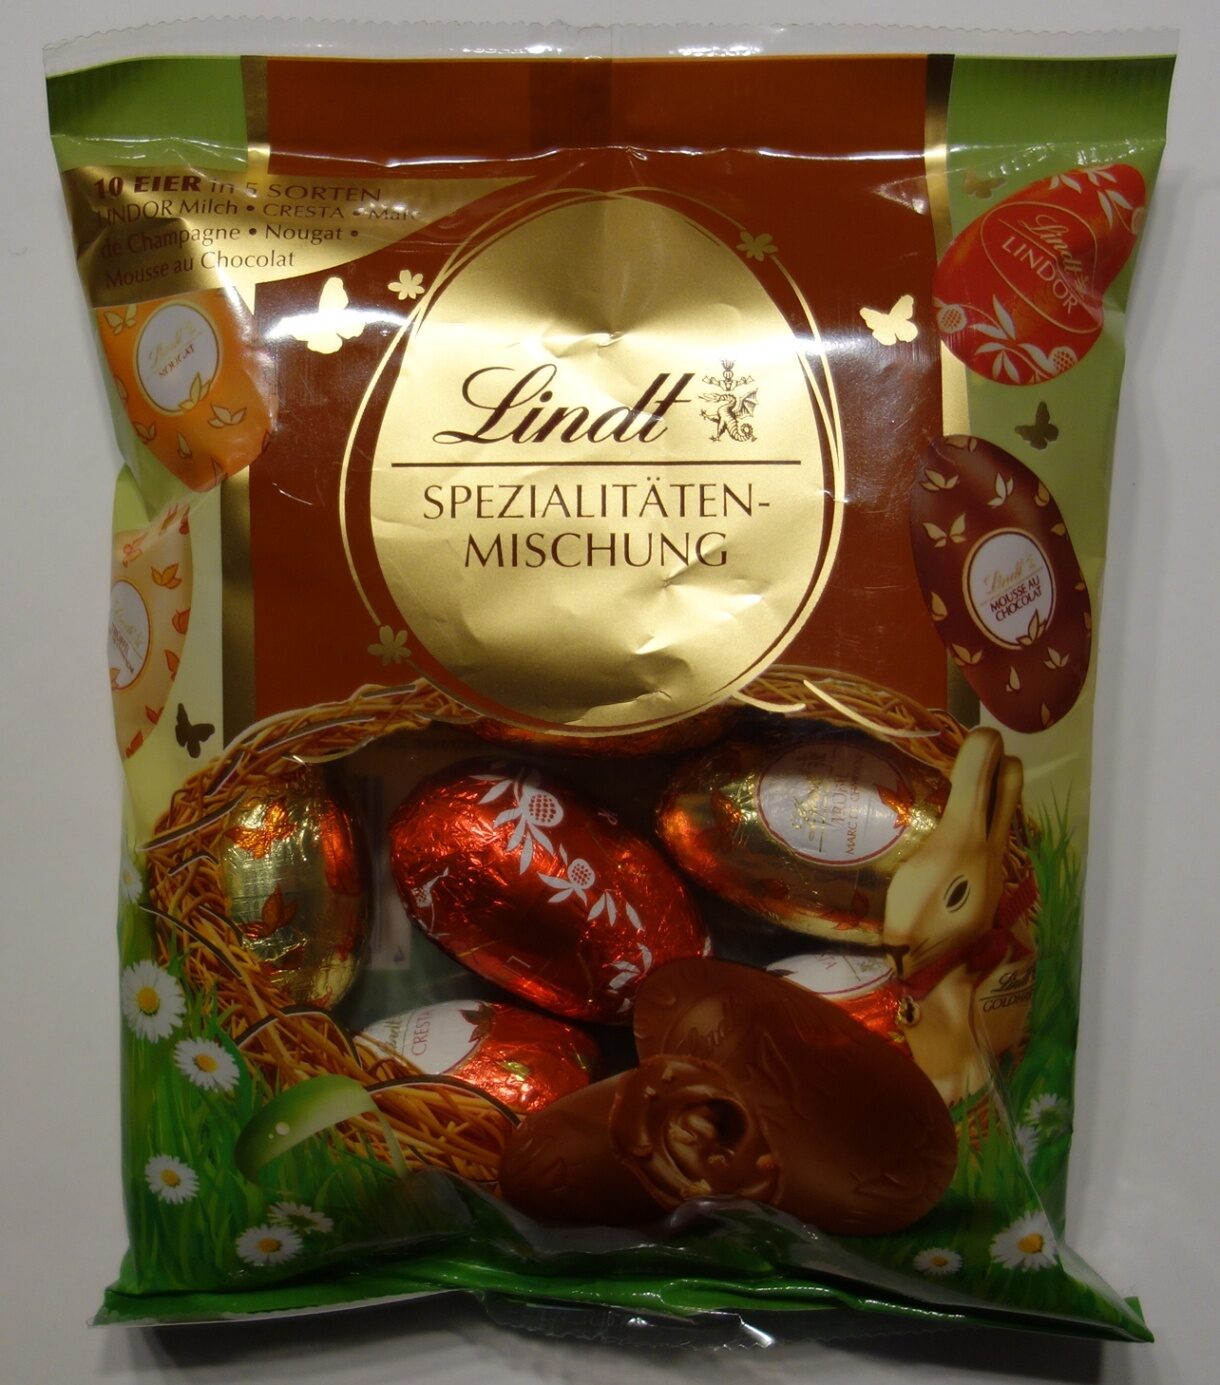 Lindt Spezialitäten-Mischung gefüllte Schokoladeneier - Produkt